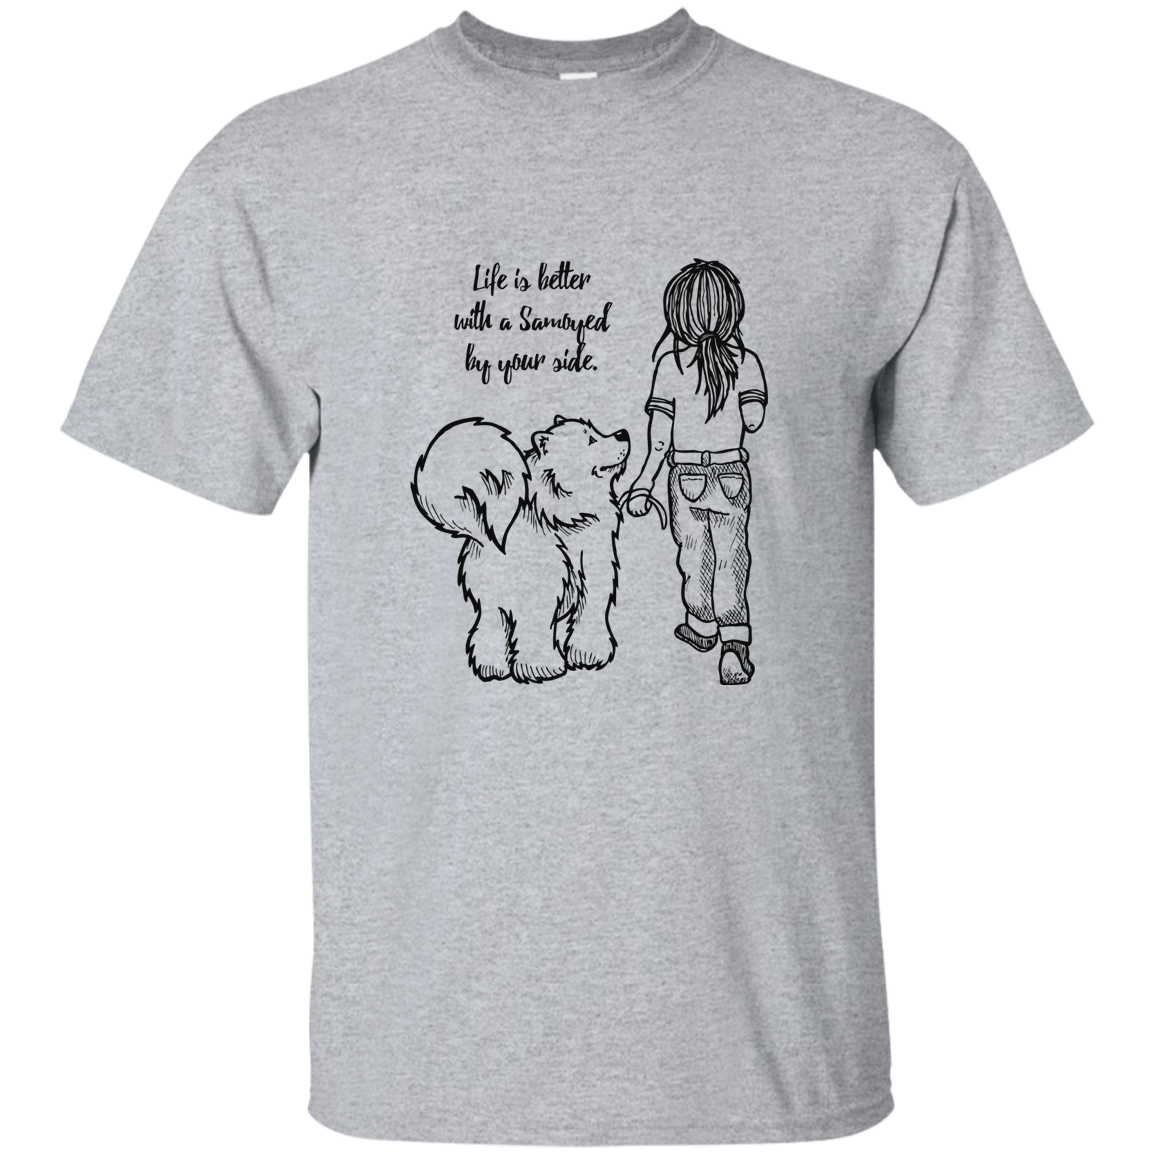 Life is Better - Samoyed - T-Shirt